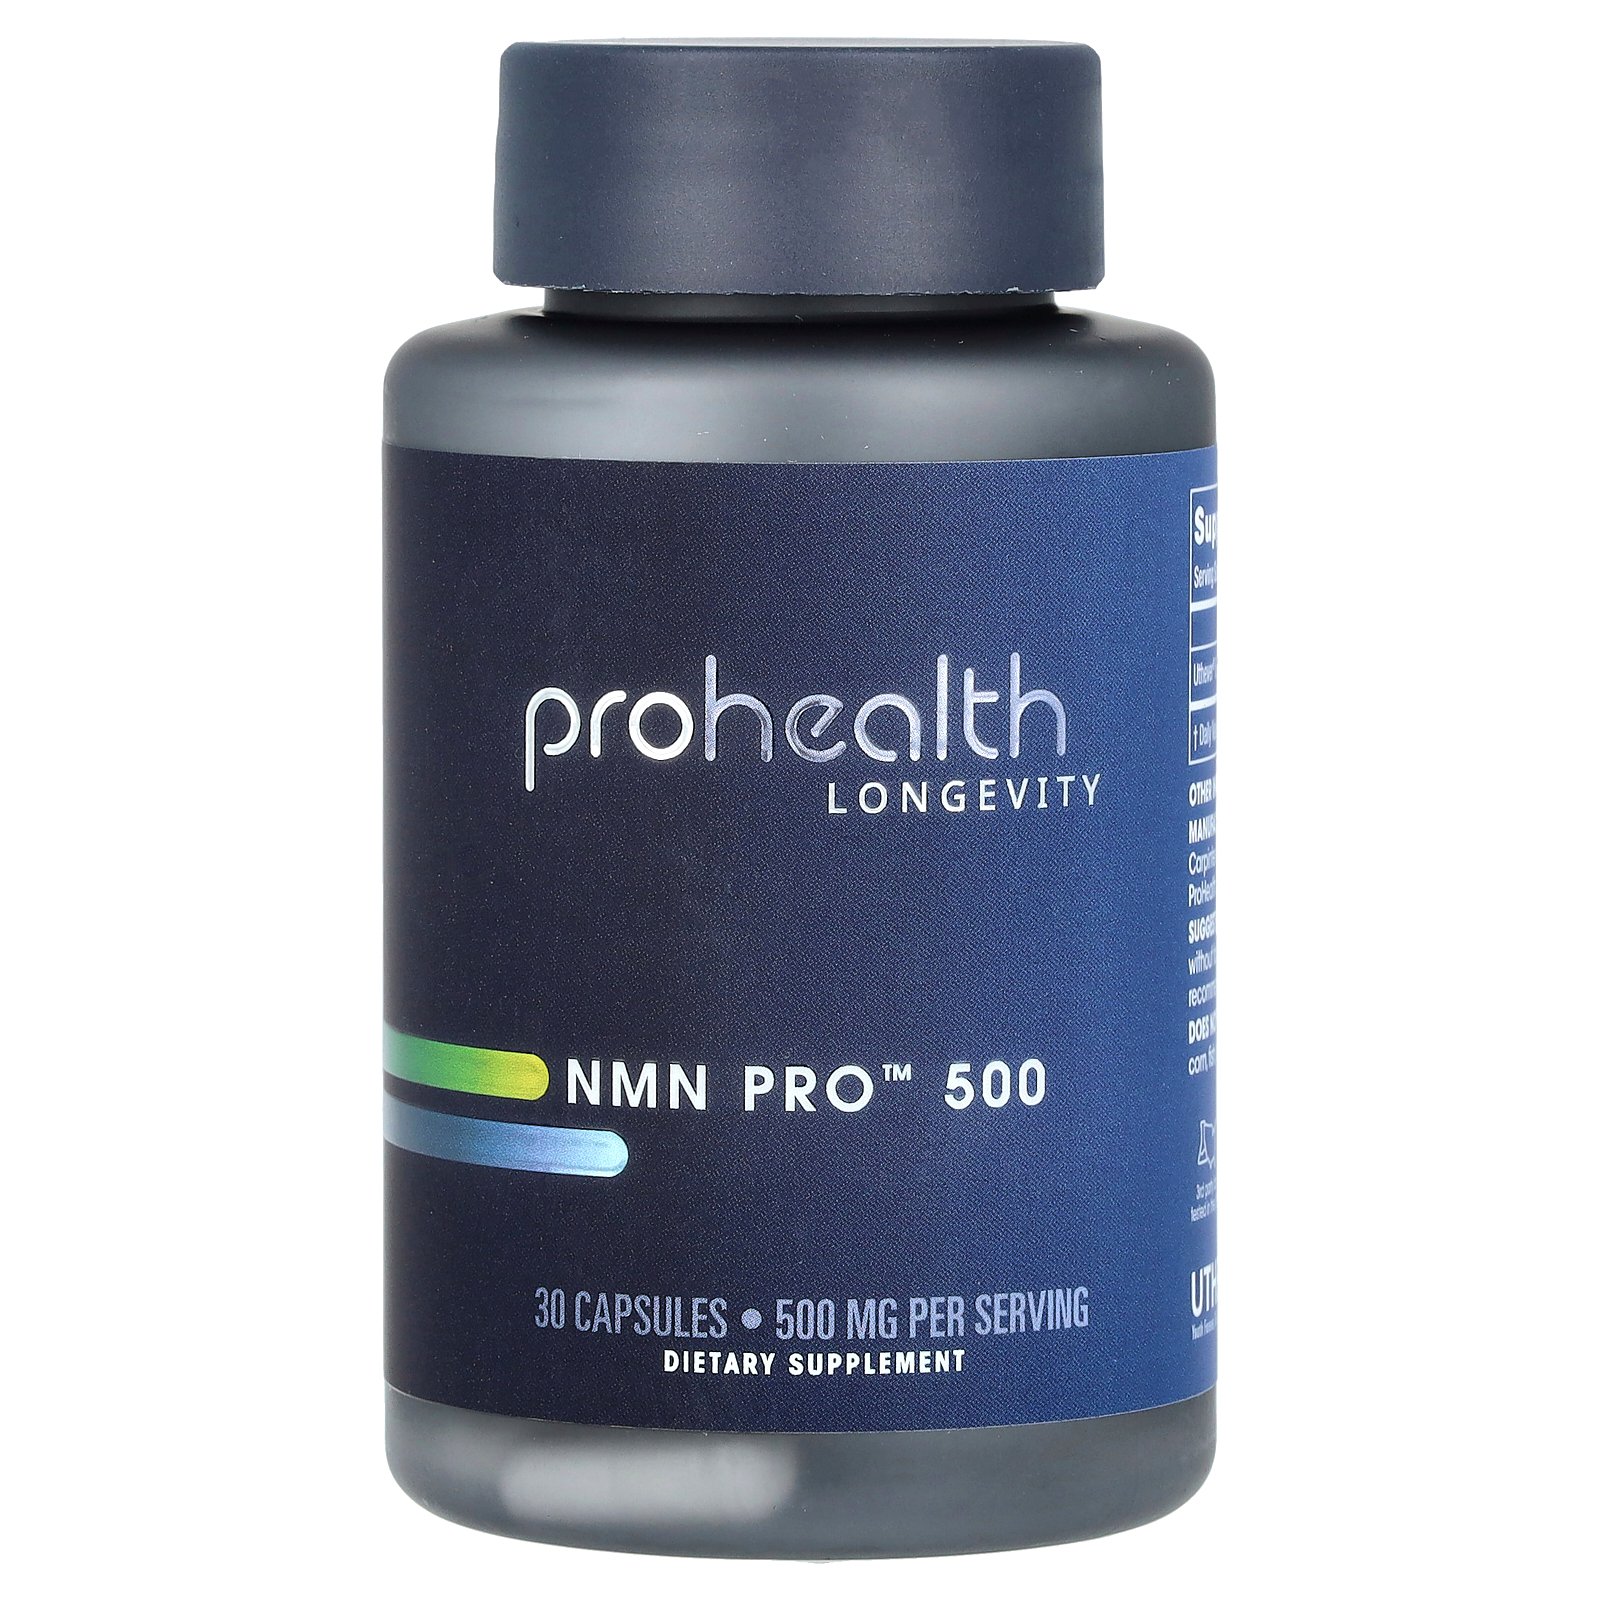 ProHealth Longevity NMN プロ 500  プロヘルス ロンジェヴィティ ニコチンアミドモノヌクレオチド ビタミン B ビタミンB3 ナイアシン NAD サプリ サプリメント カプセル 500mg 30粒